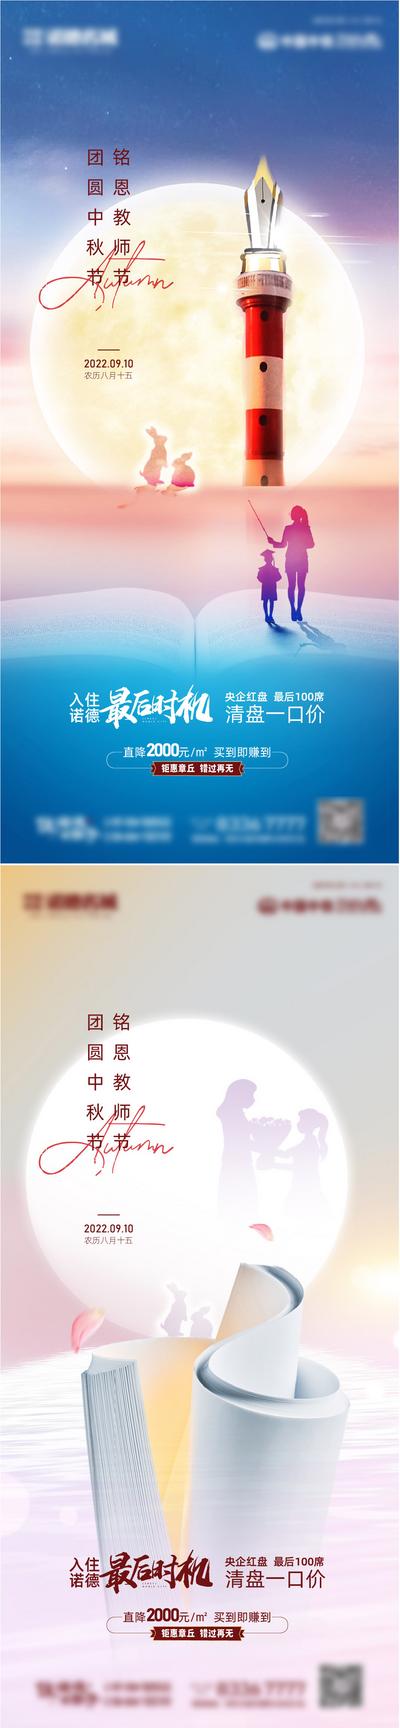 南门网 海报 地产 中国传统节日 公历节日 中秋节 教师节 书本 月亮 人物剪影 系列